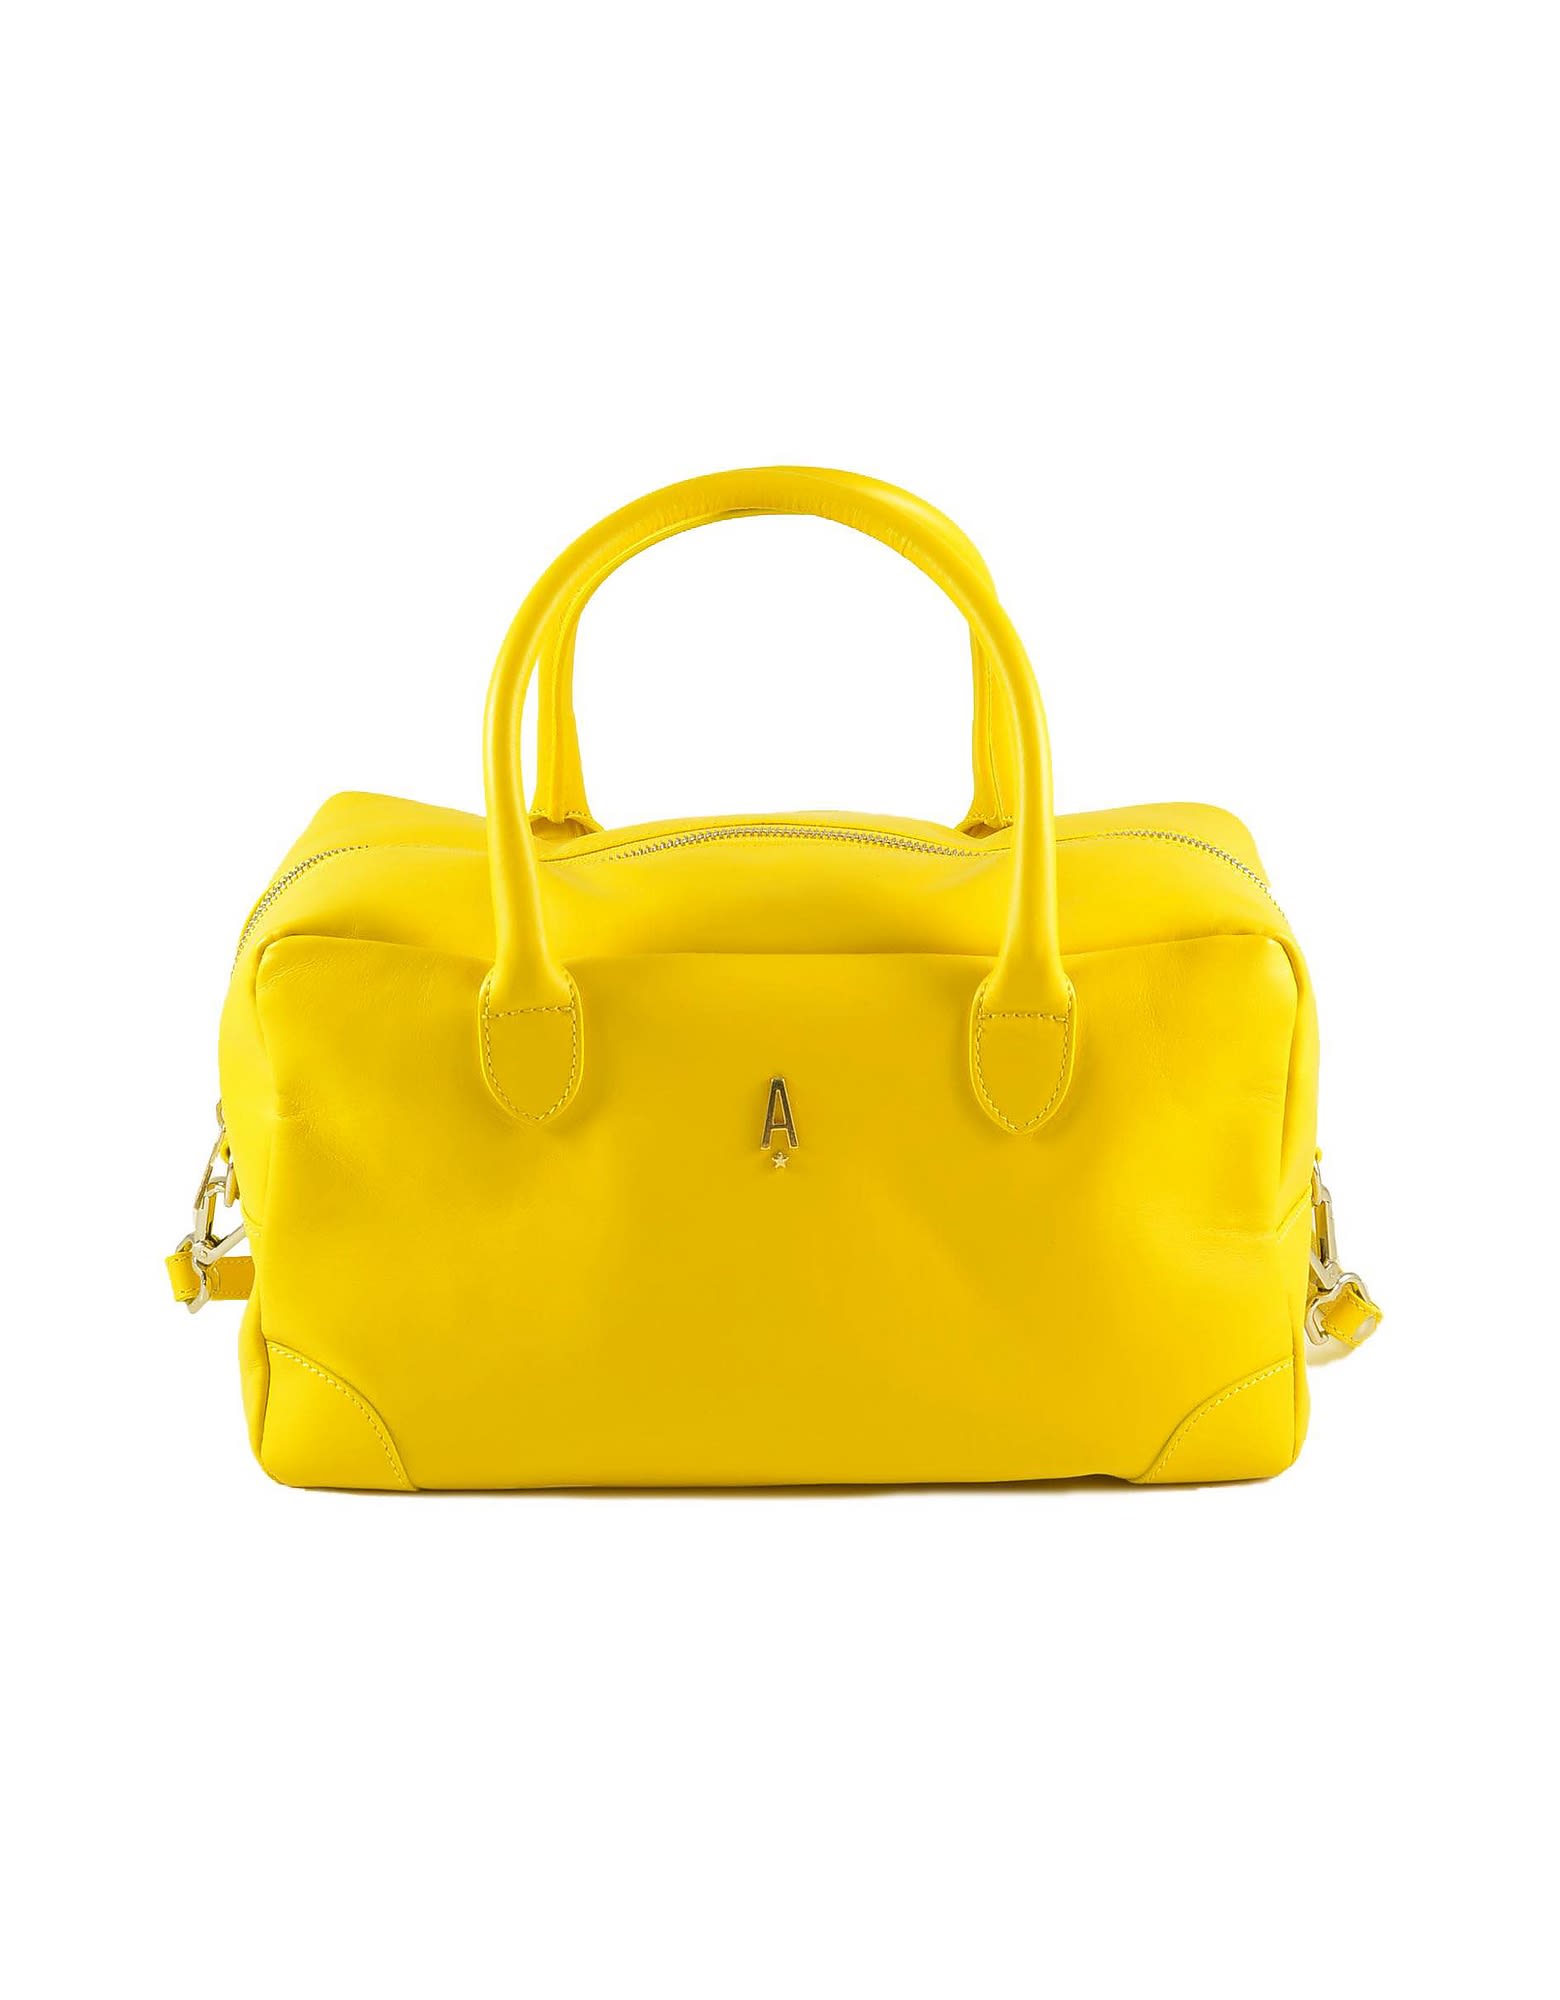 aniye by Womens Yellow Handbag